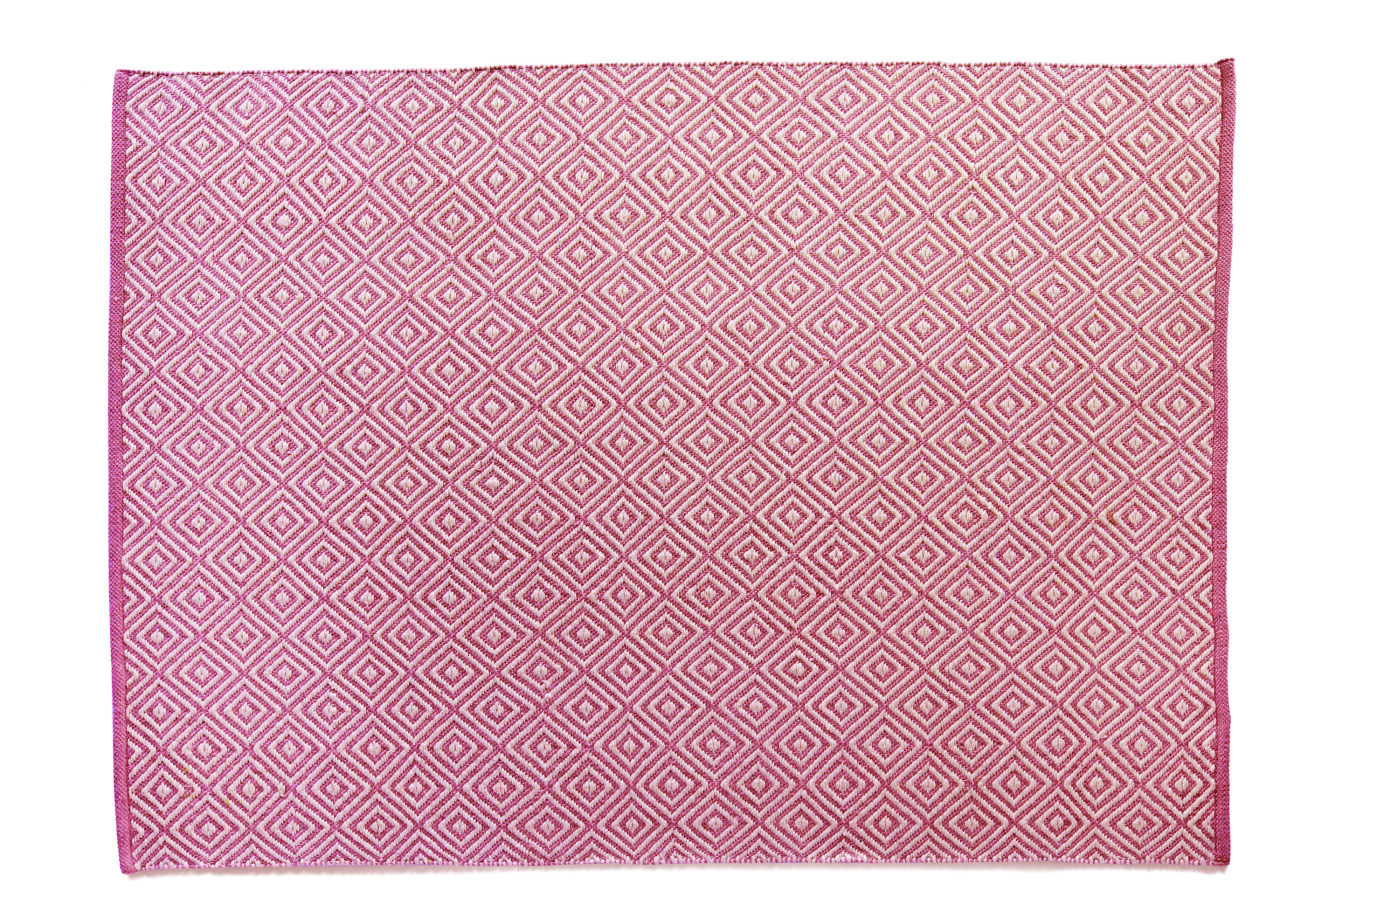 Hug Rug Woven Diamond Rug Coral Pink 80x150